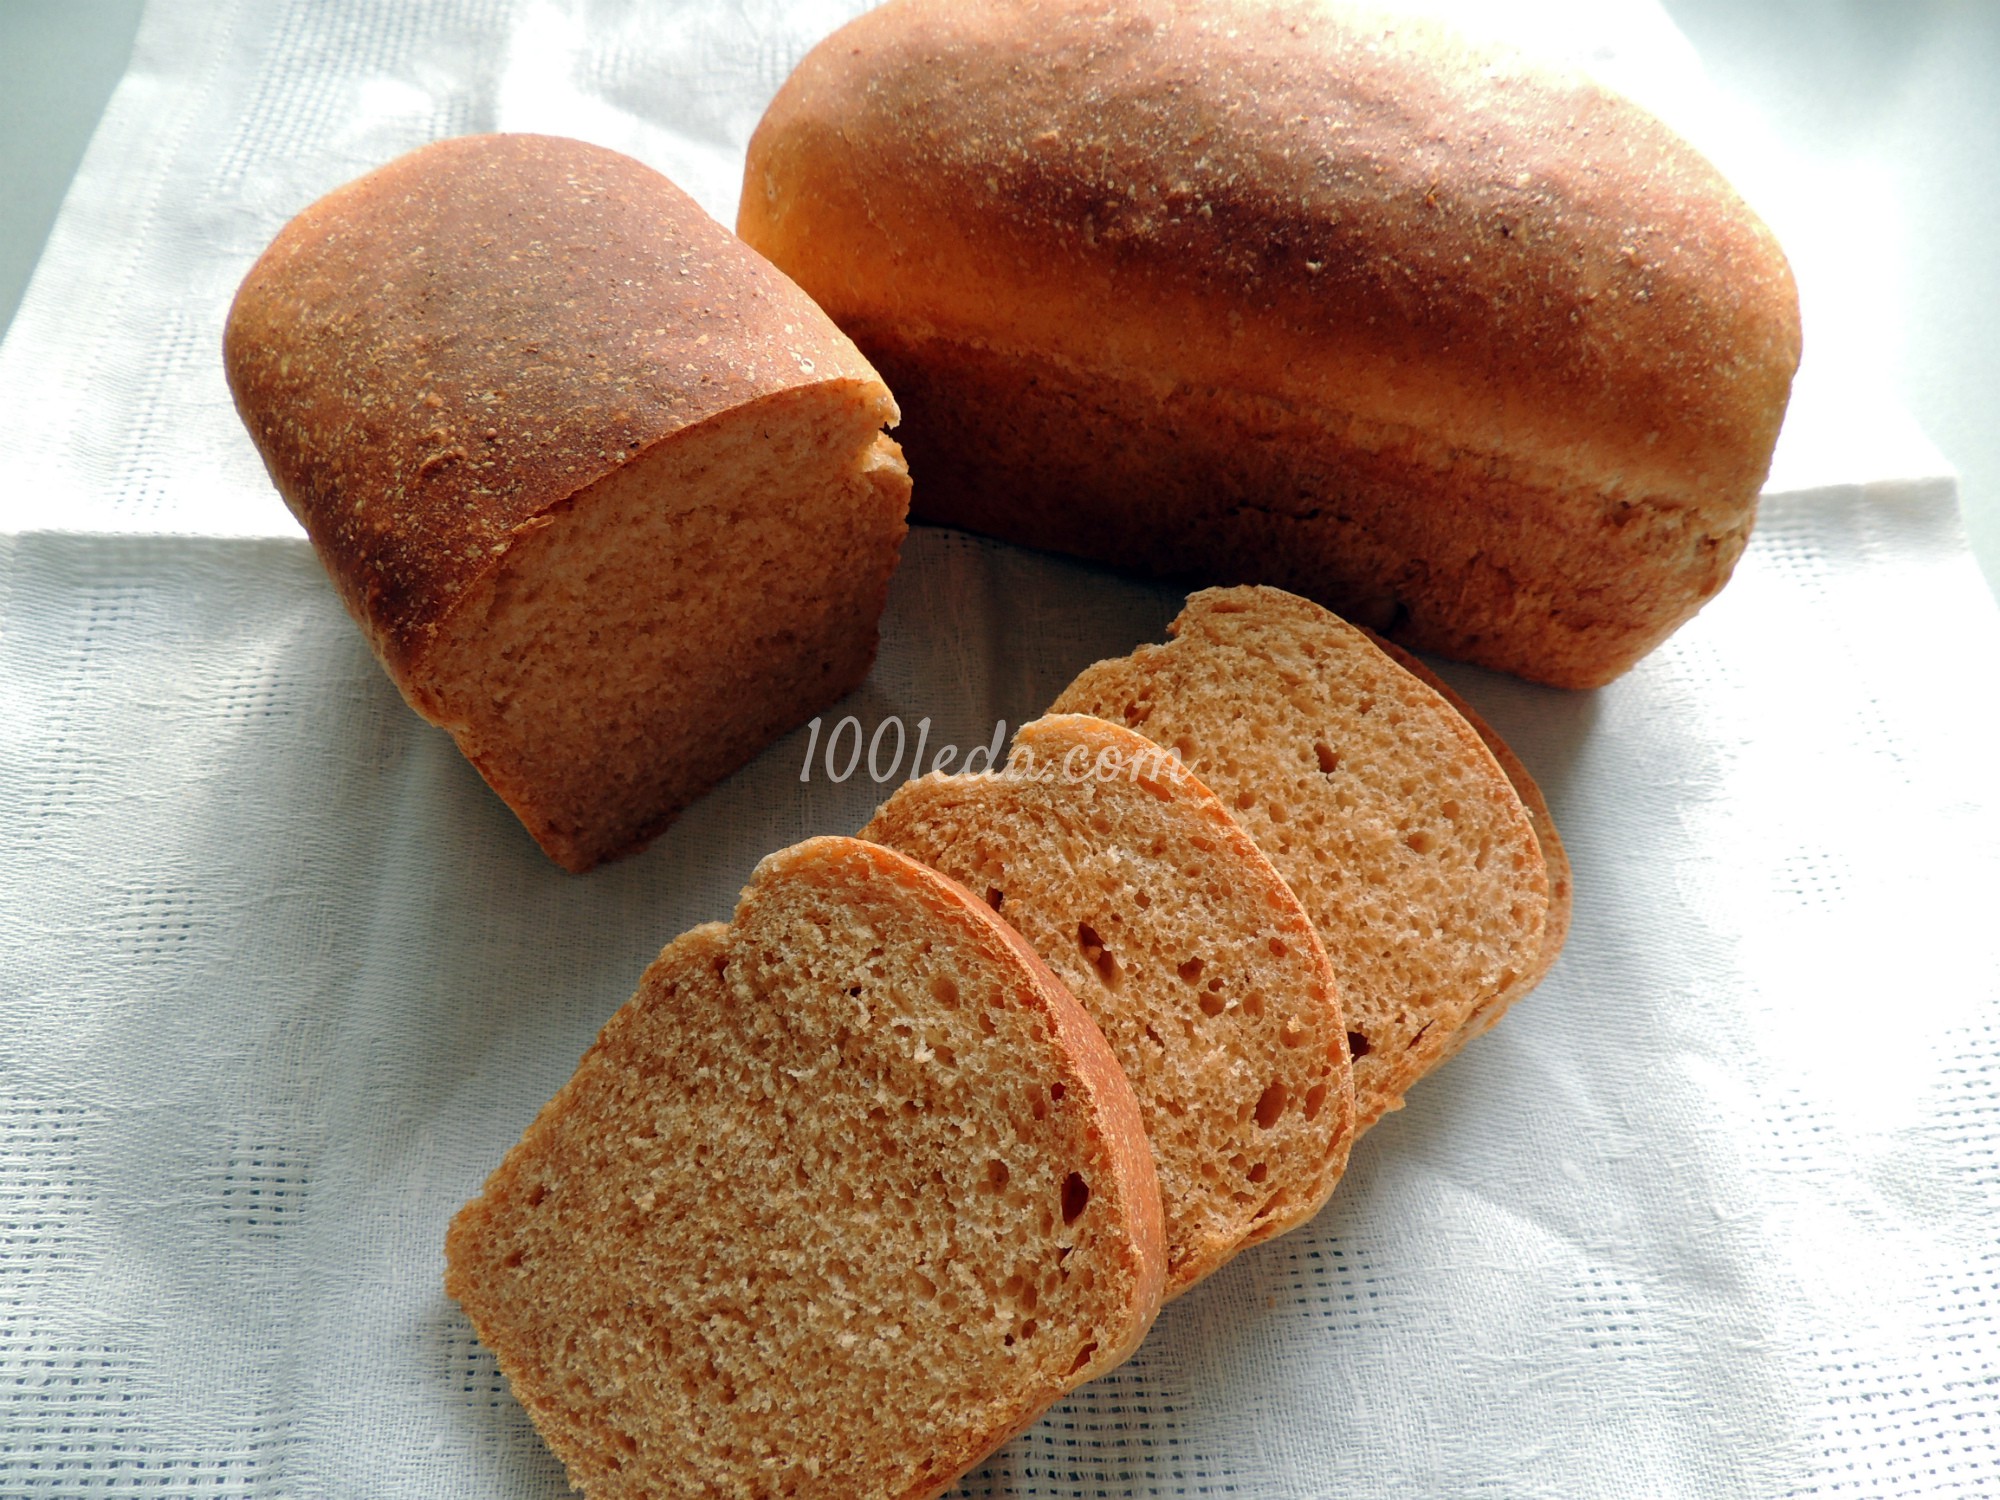  Хлеб с томатом: рецепт с пошаговым фото - Шаг №6